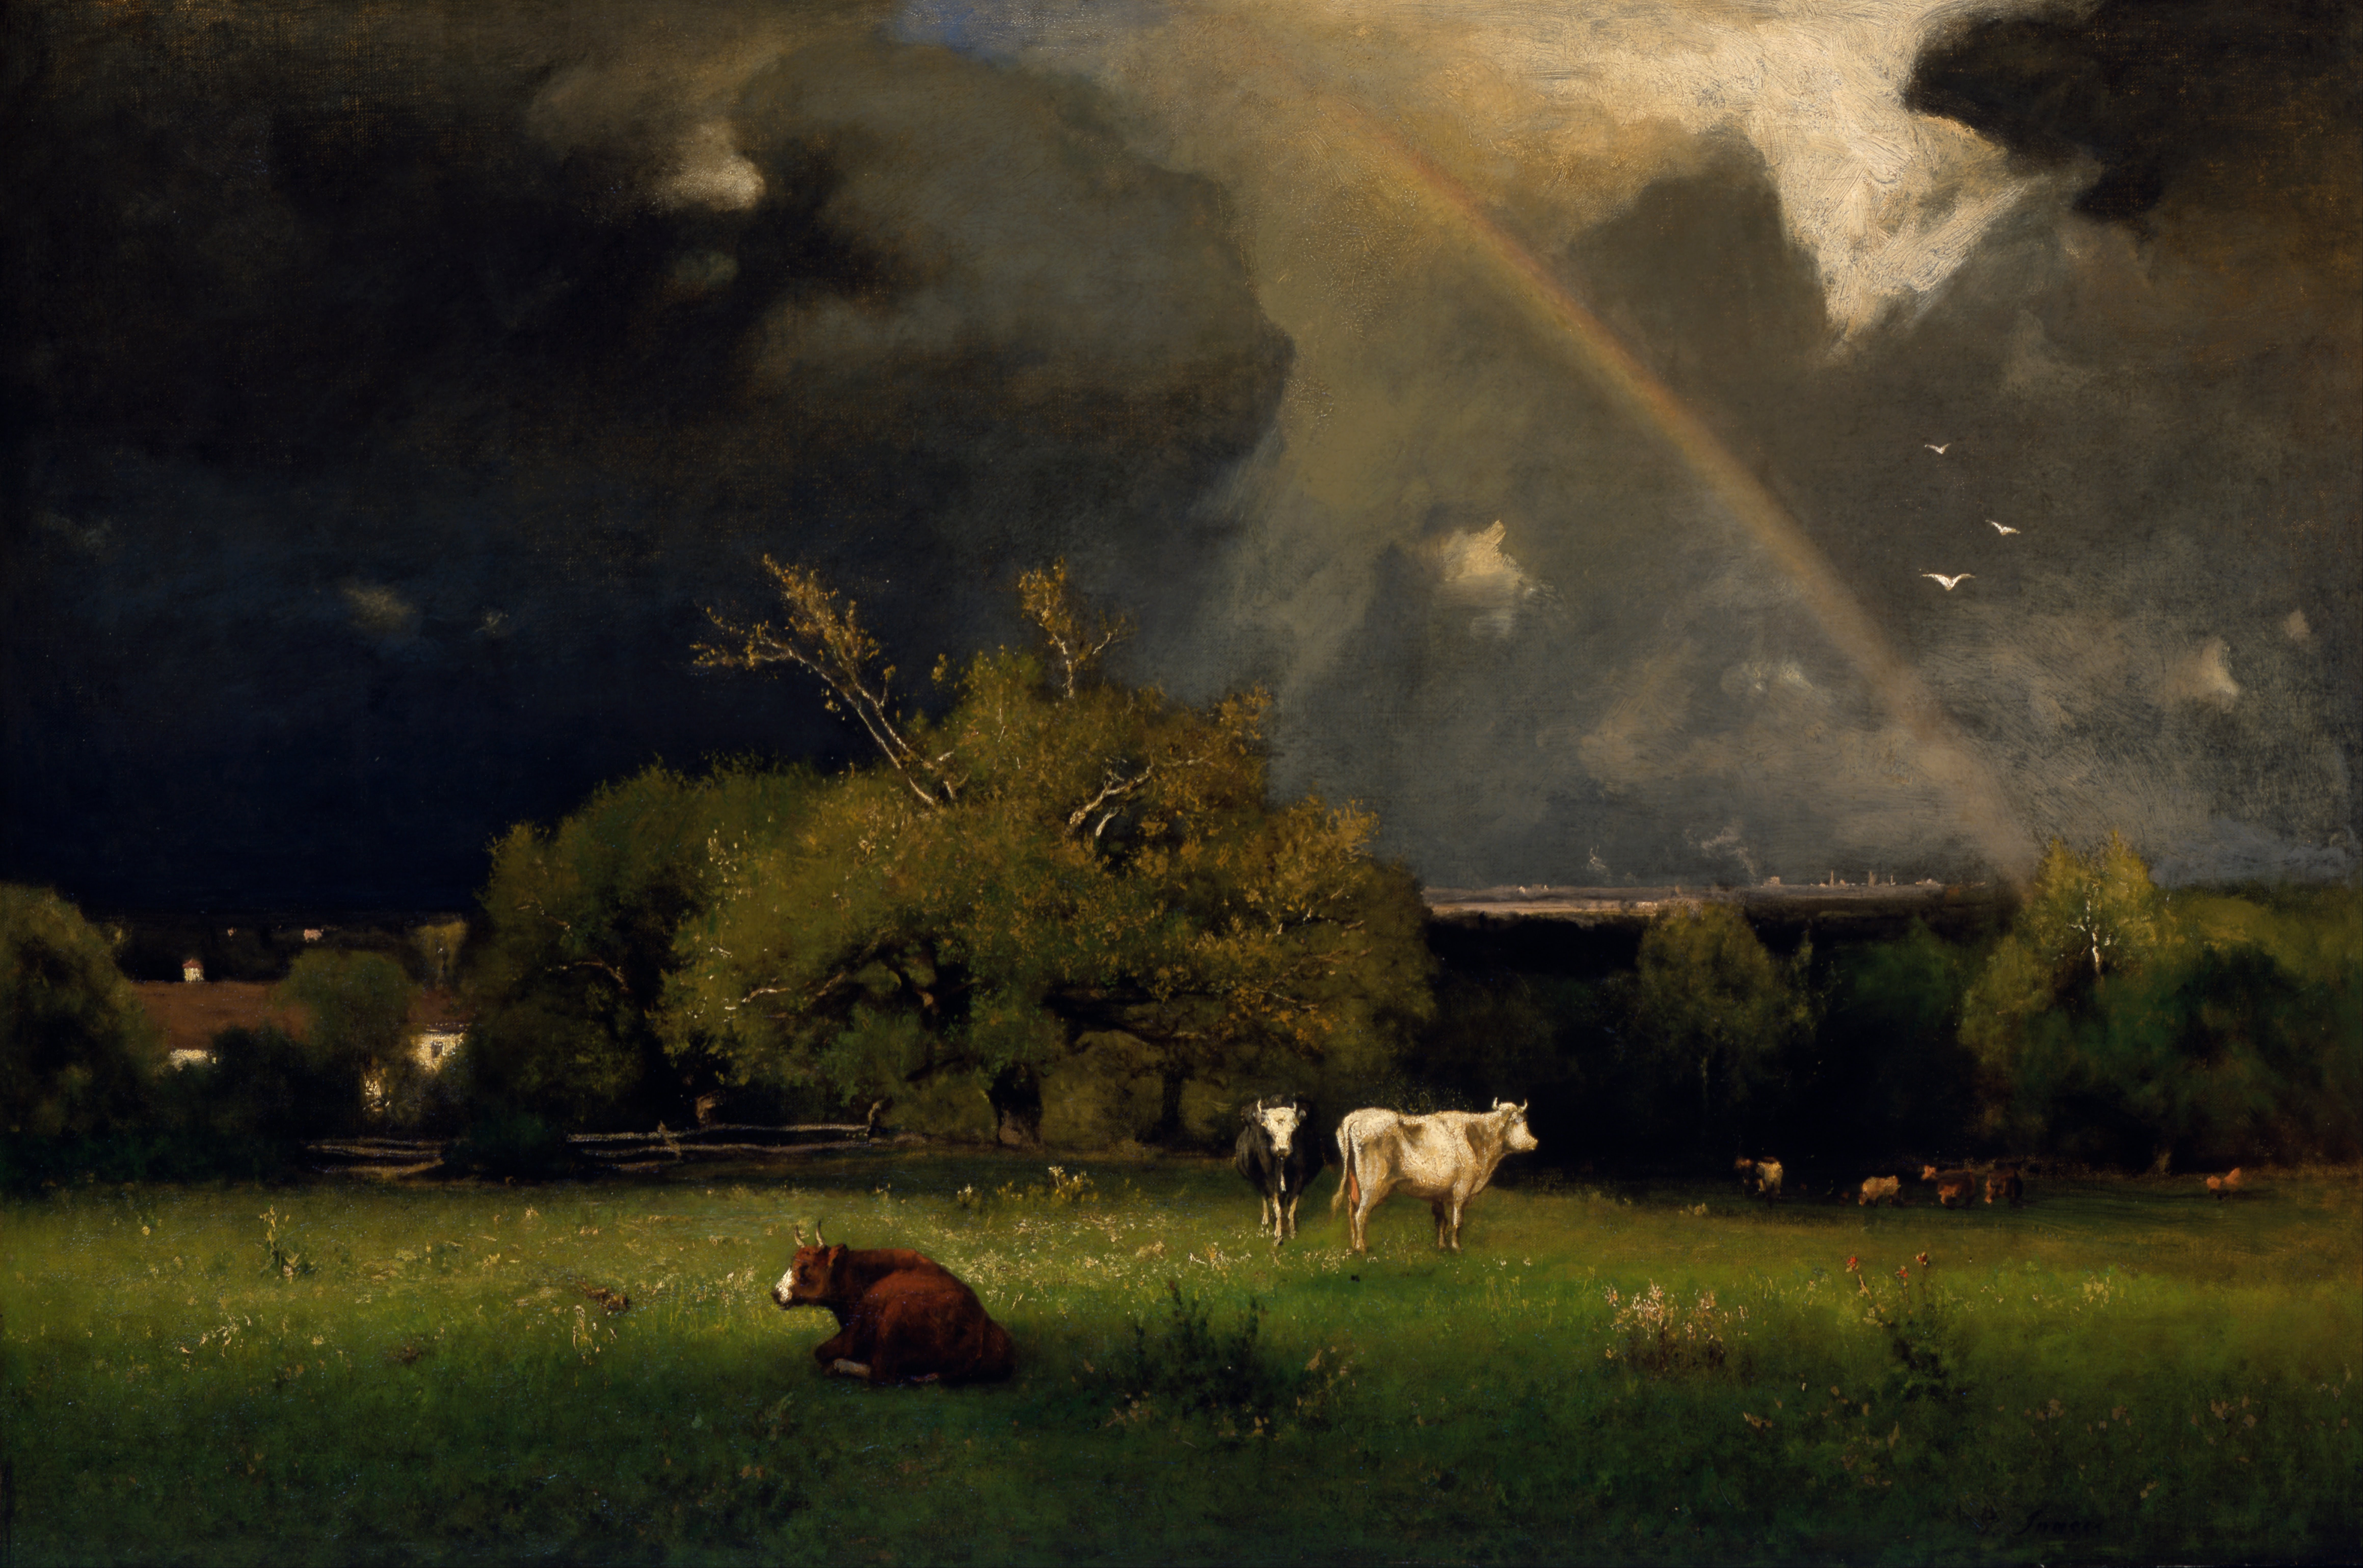 Gökkuşağı by George Inness - yaklaşık 1878-1879 - 30 x 45 in 